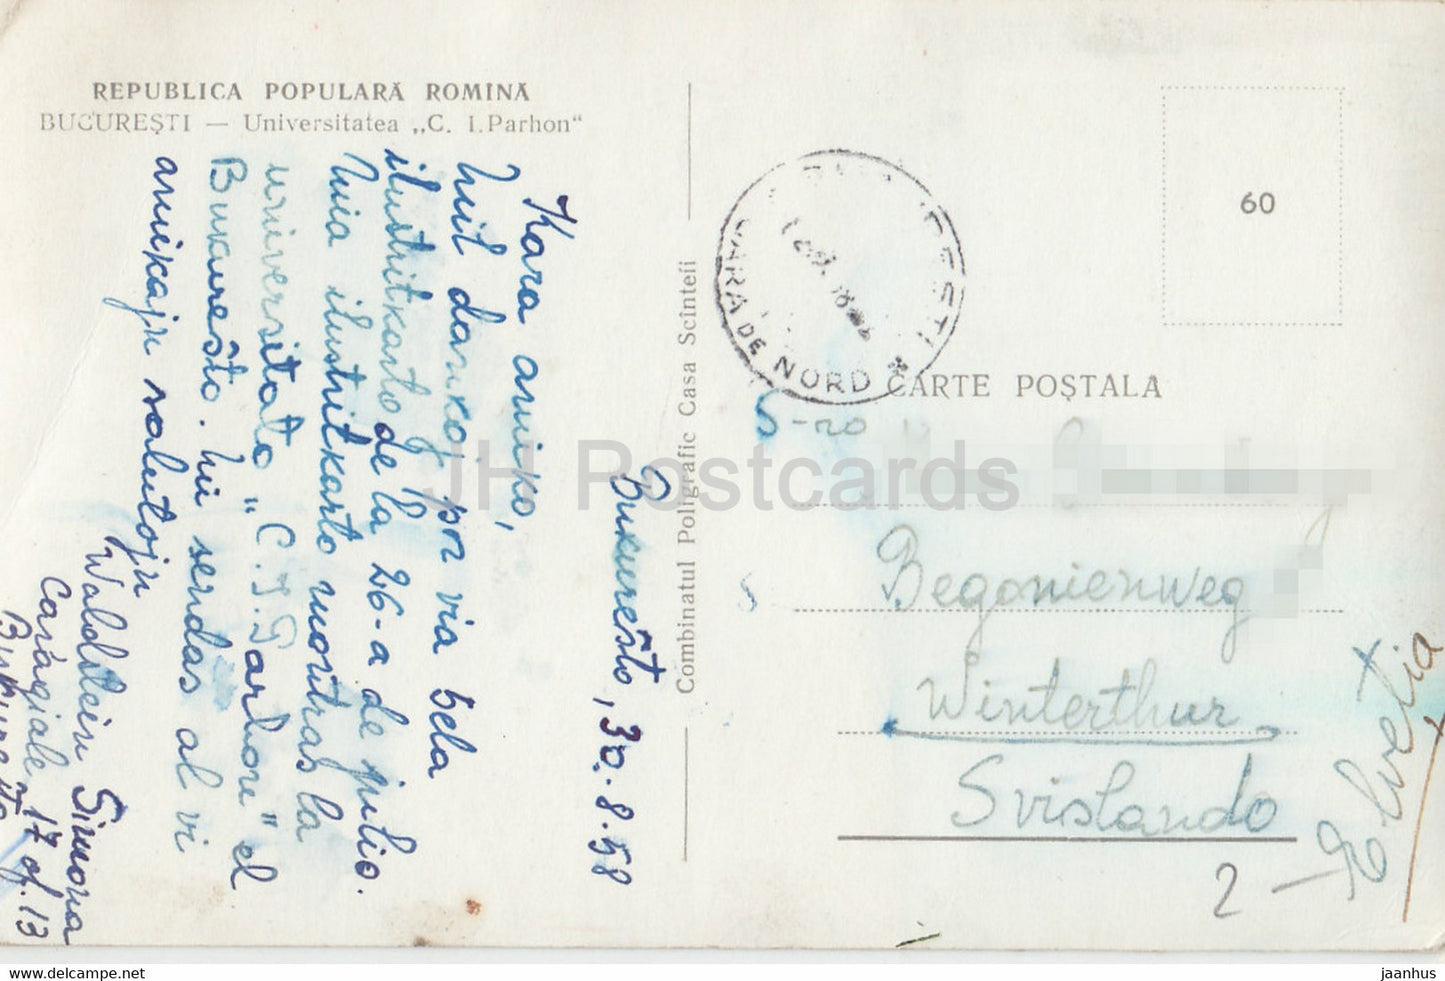 Bucarest - Bucuresti - Universitatea CI Parhon - tram - université - carte postale ancienne - 1958 - Roumanie - occasion